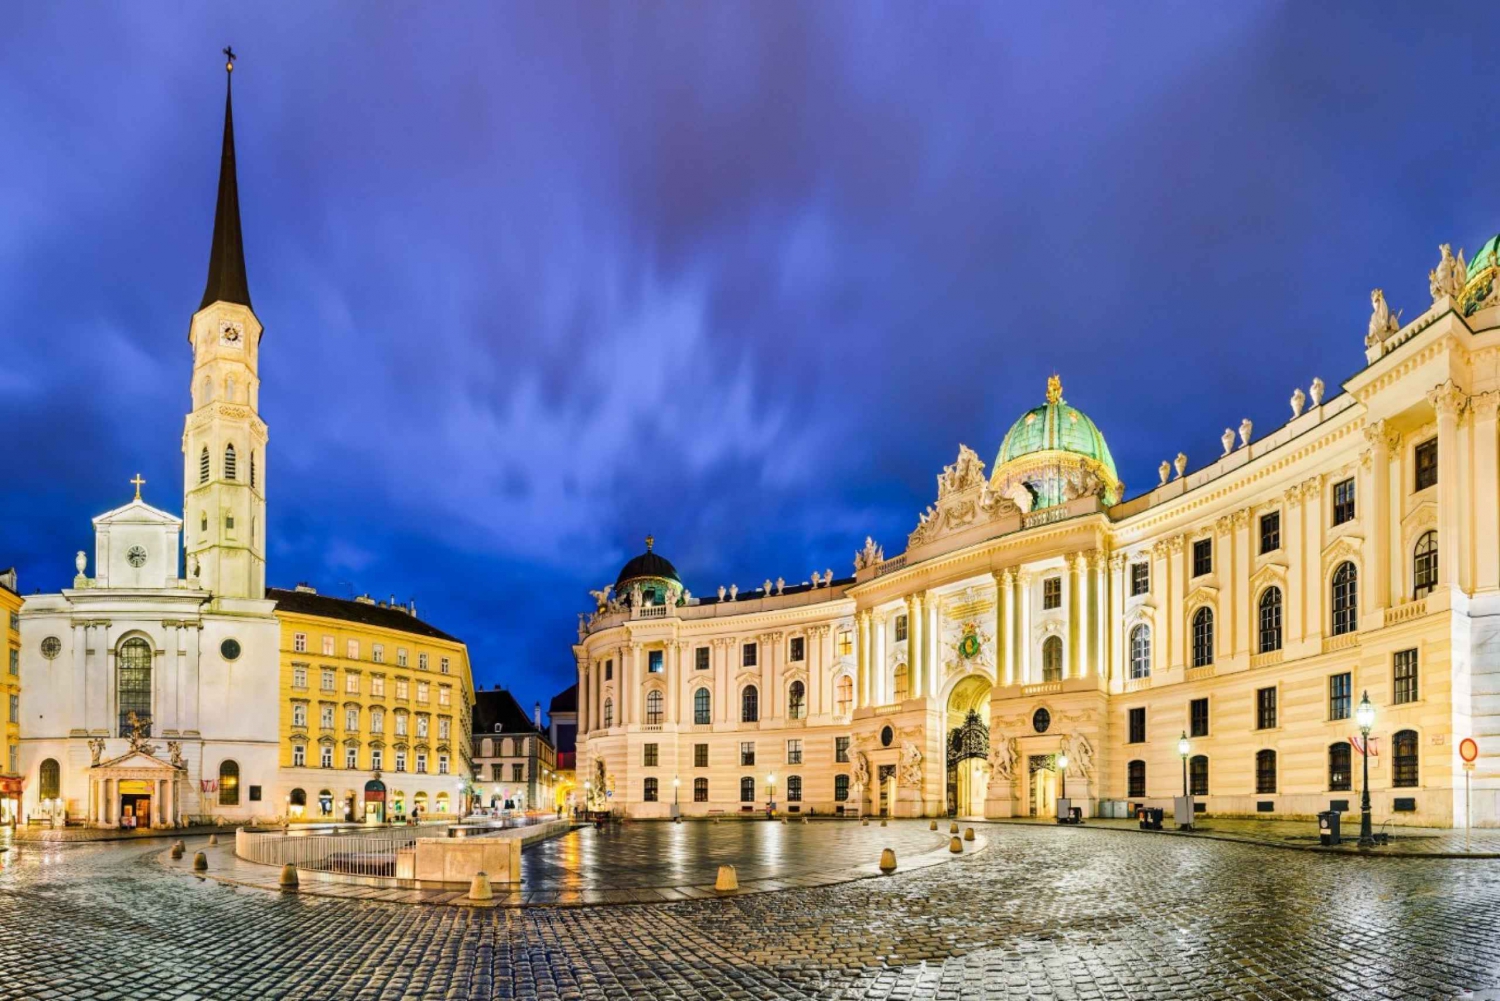 Wiens läckerheter: En rundtur genom kejserlig elegans